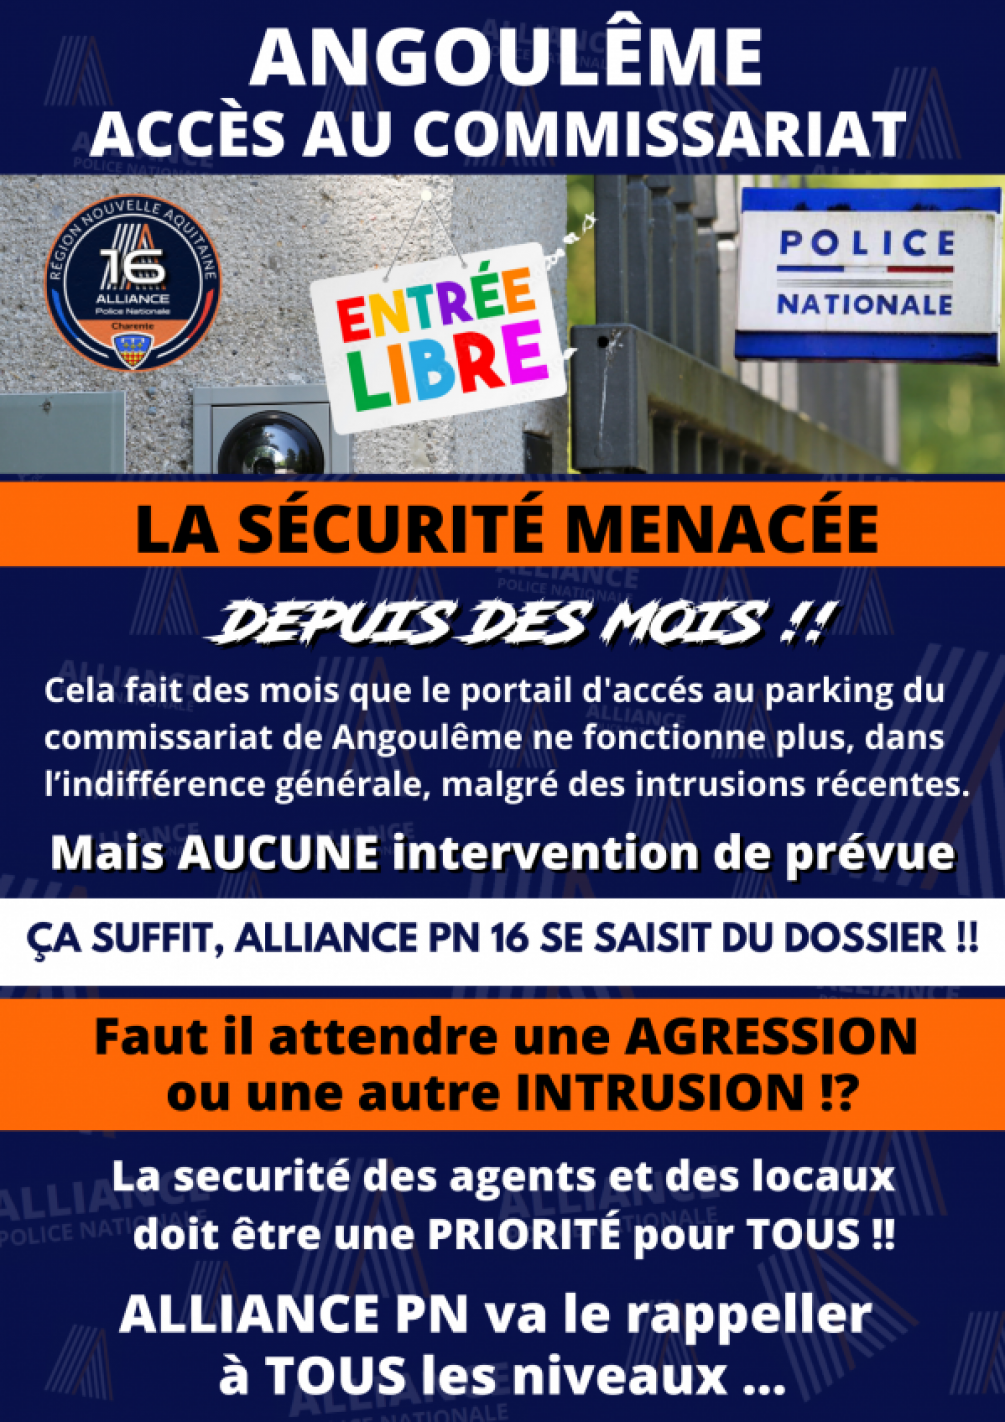 Angoulême la securité menacée !